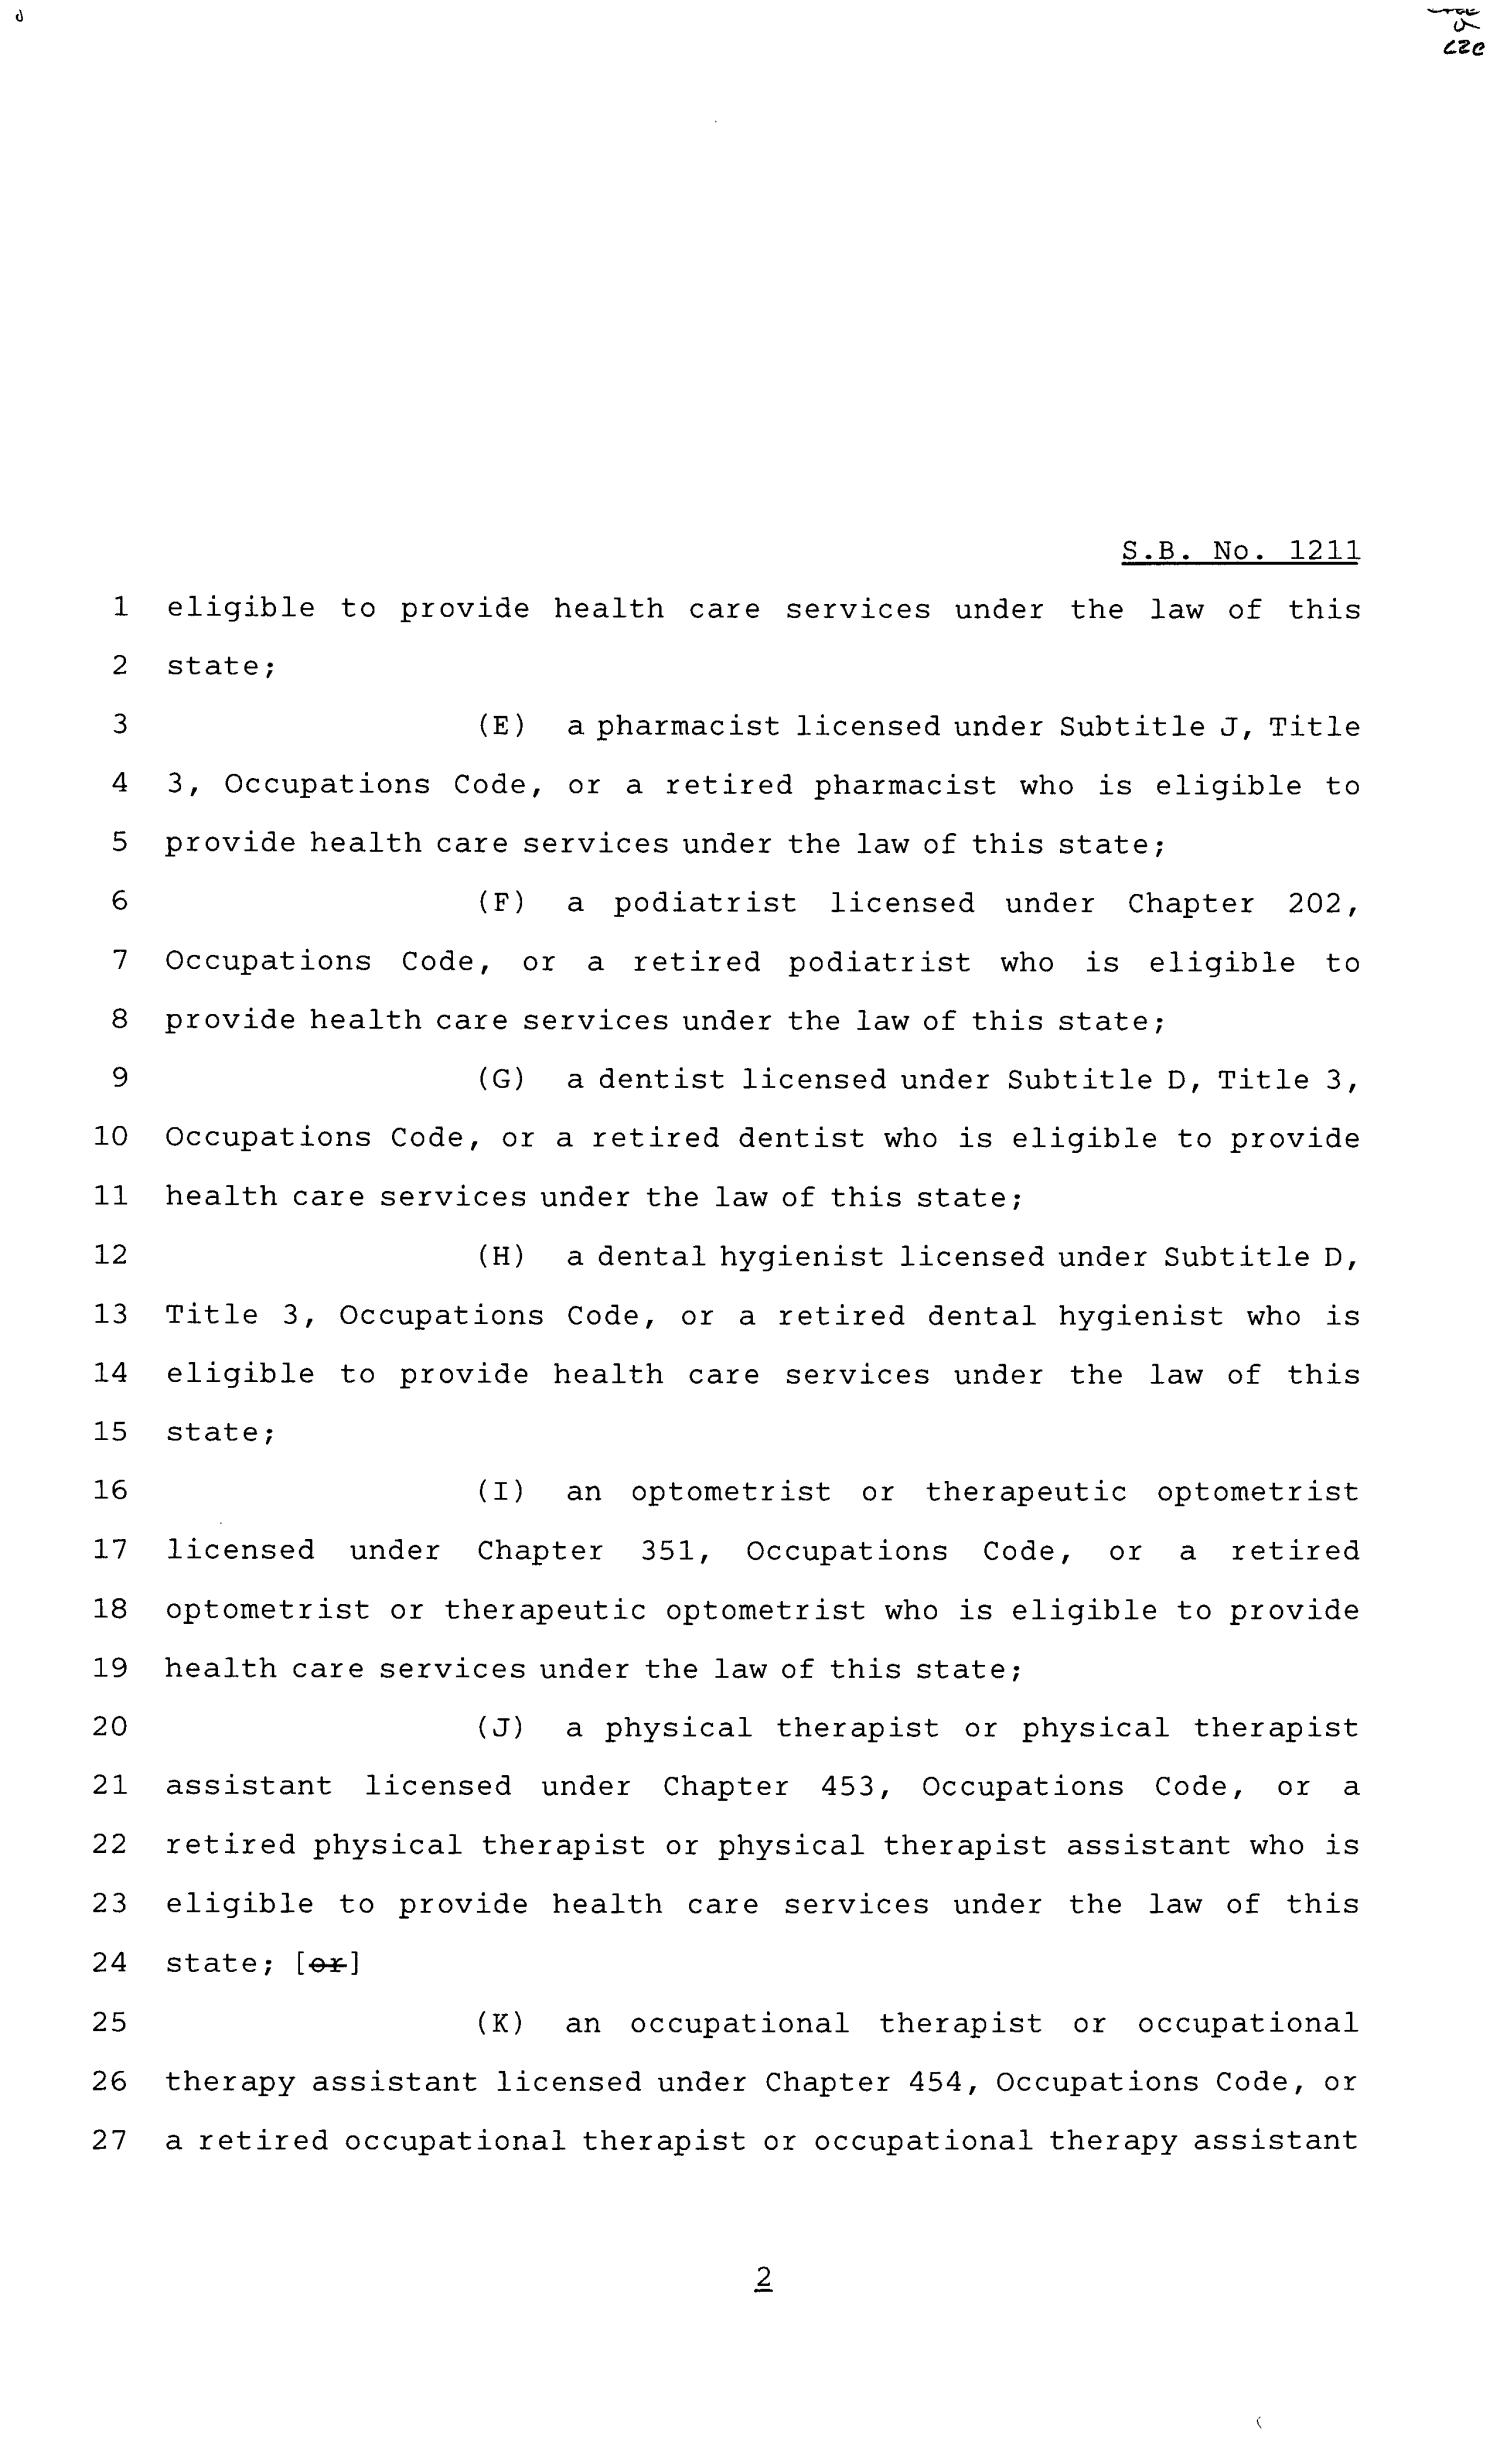 81st Texas Legislature, Senate Bill 1211, Chapter 791
                                                
                                                    [Sequence #]: 2 of 4
                                                